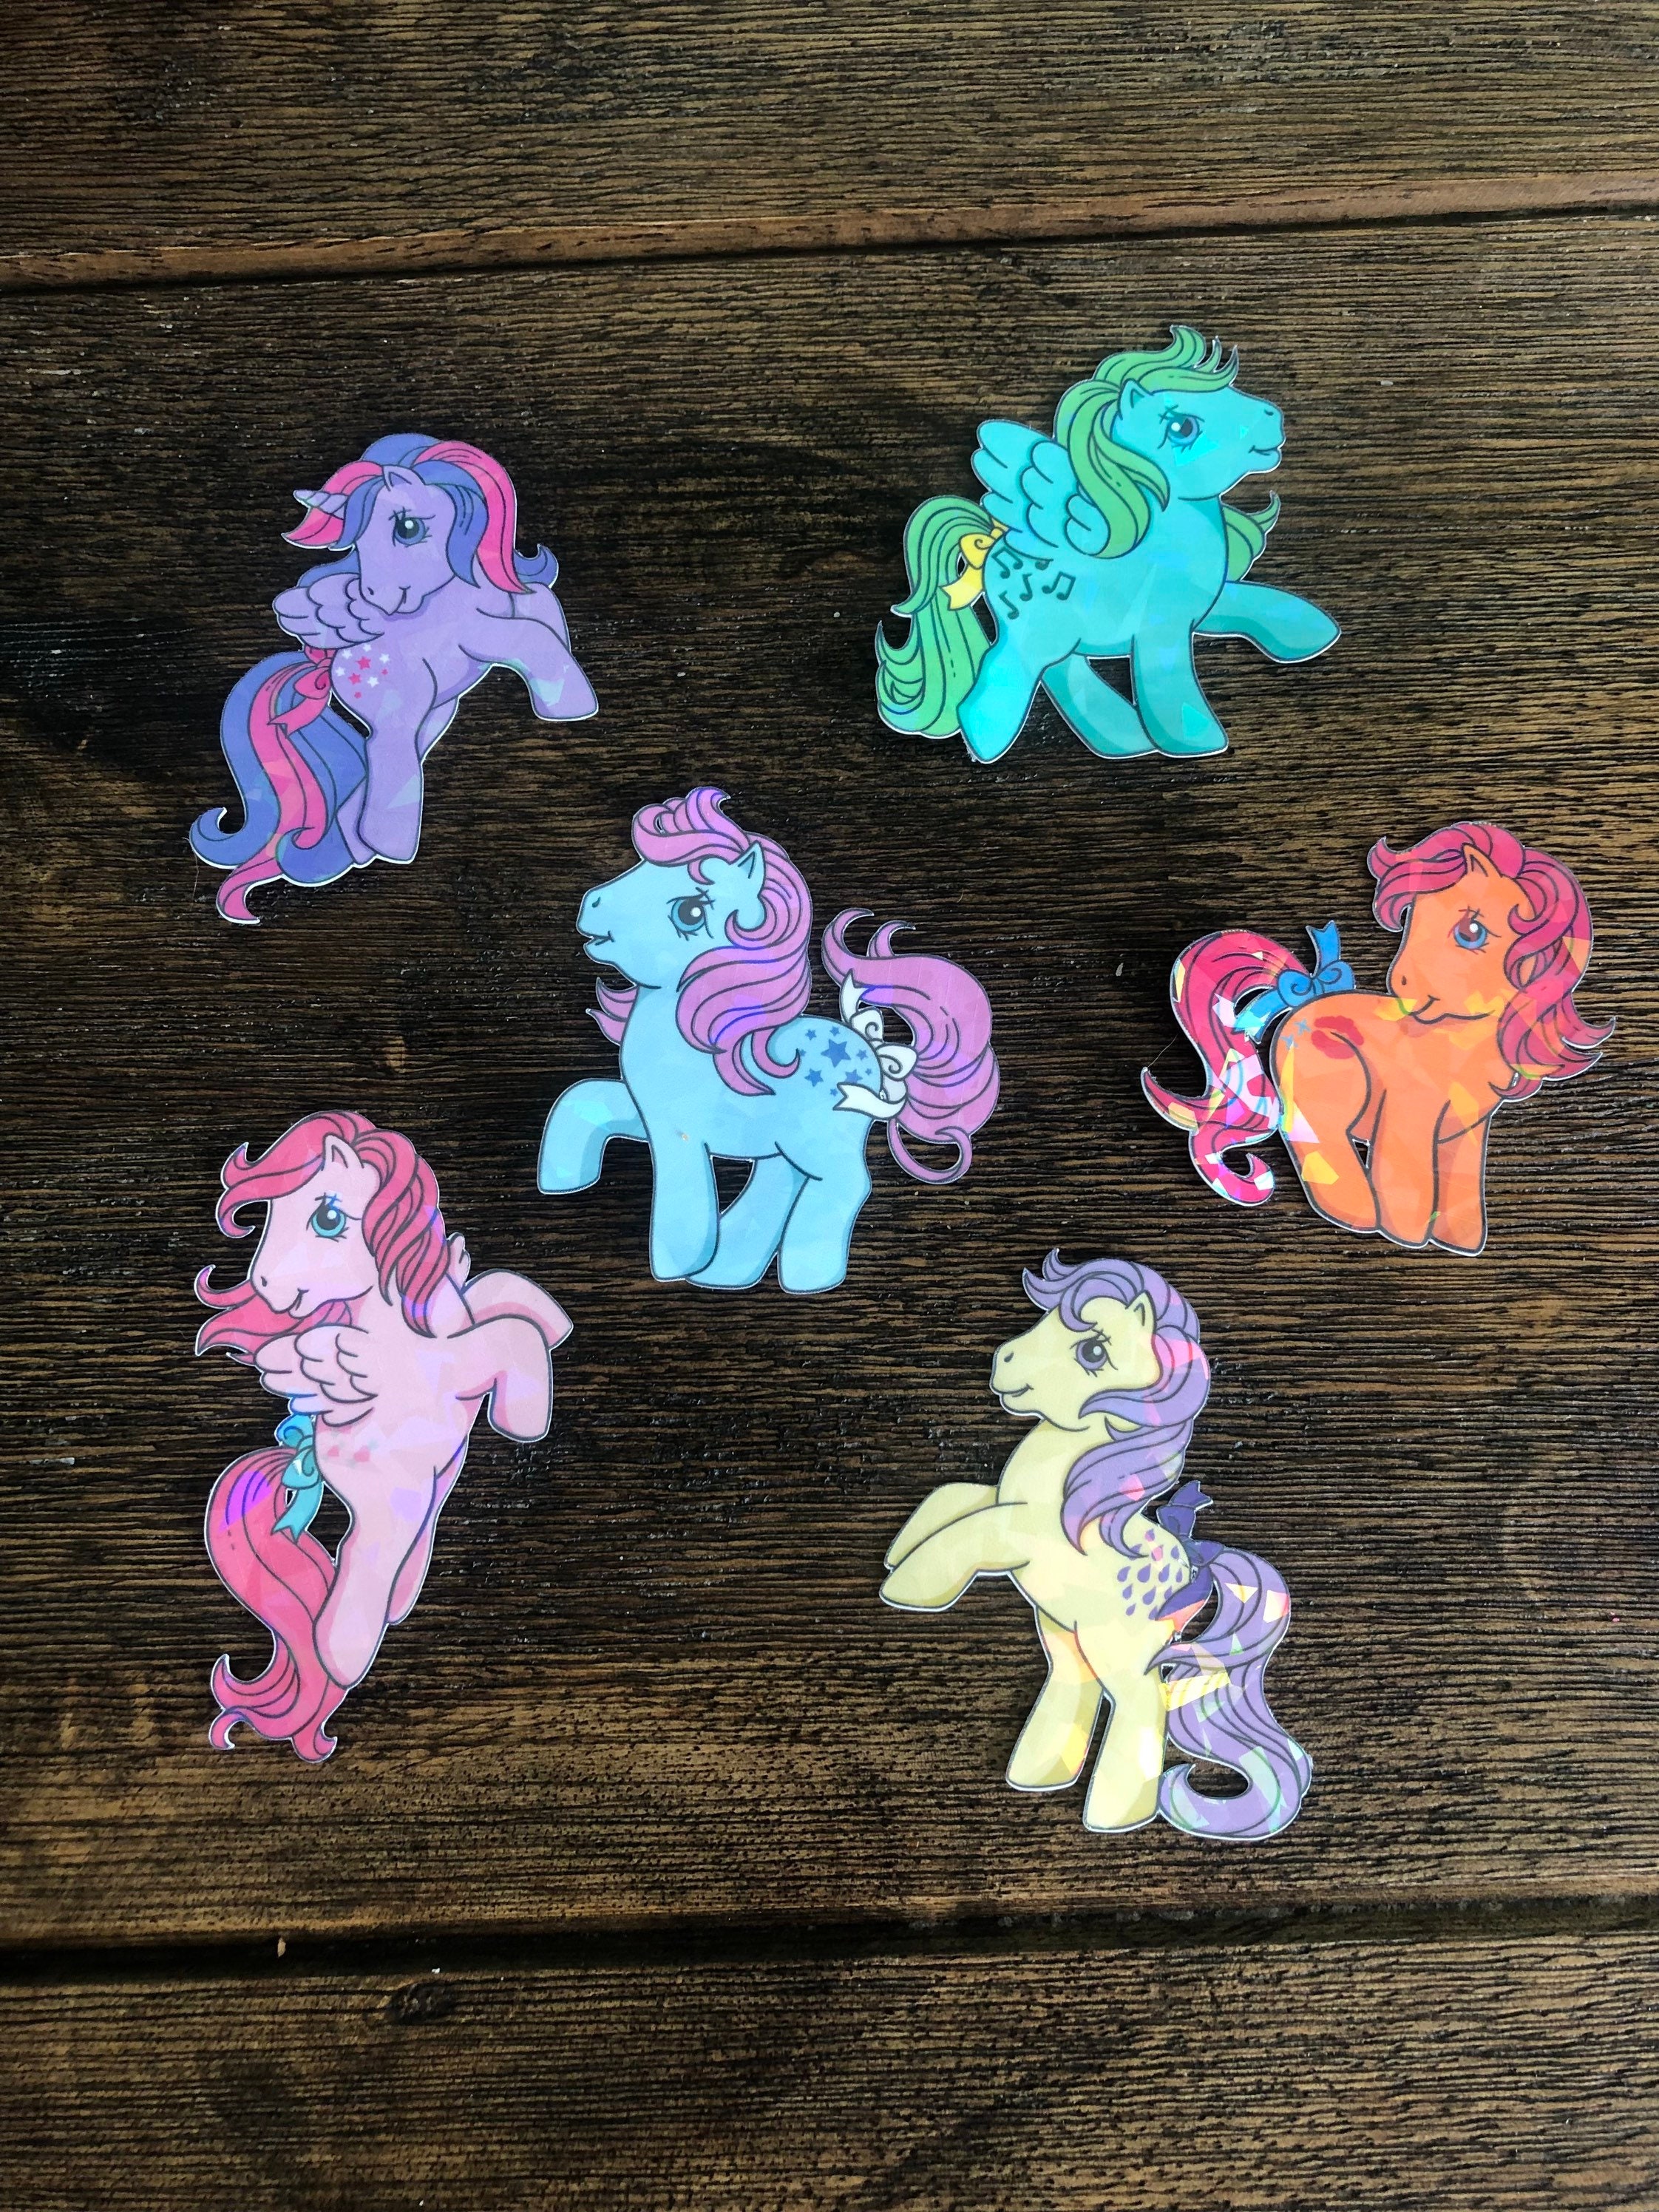 Mamá Decoradora: My Little Pony PNG descarga gratis  Personajes de my little  pony, My little pony fotos, Rarity my little pony